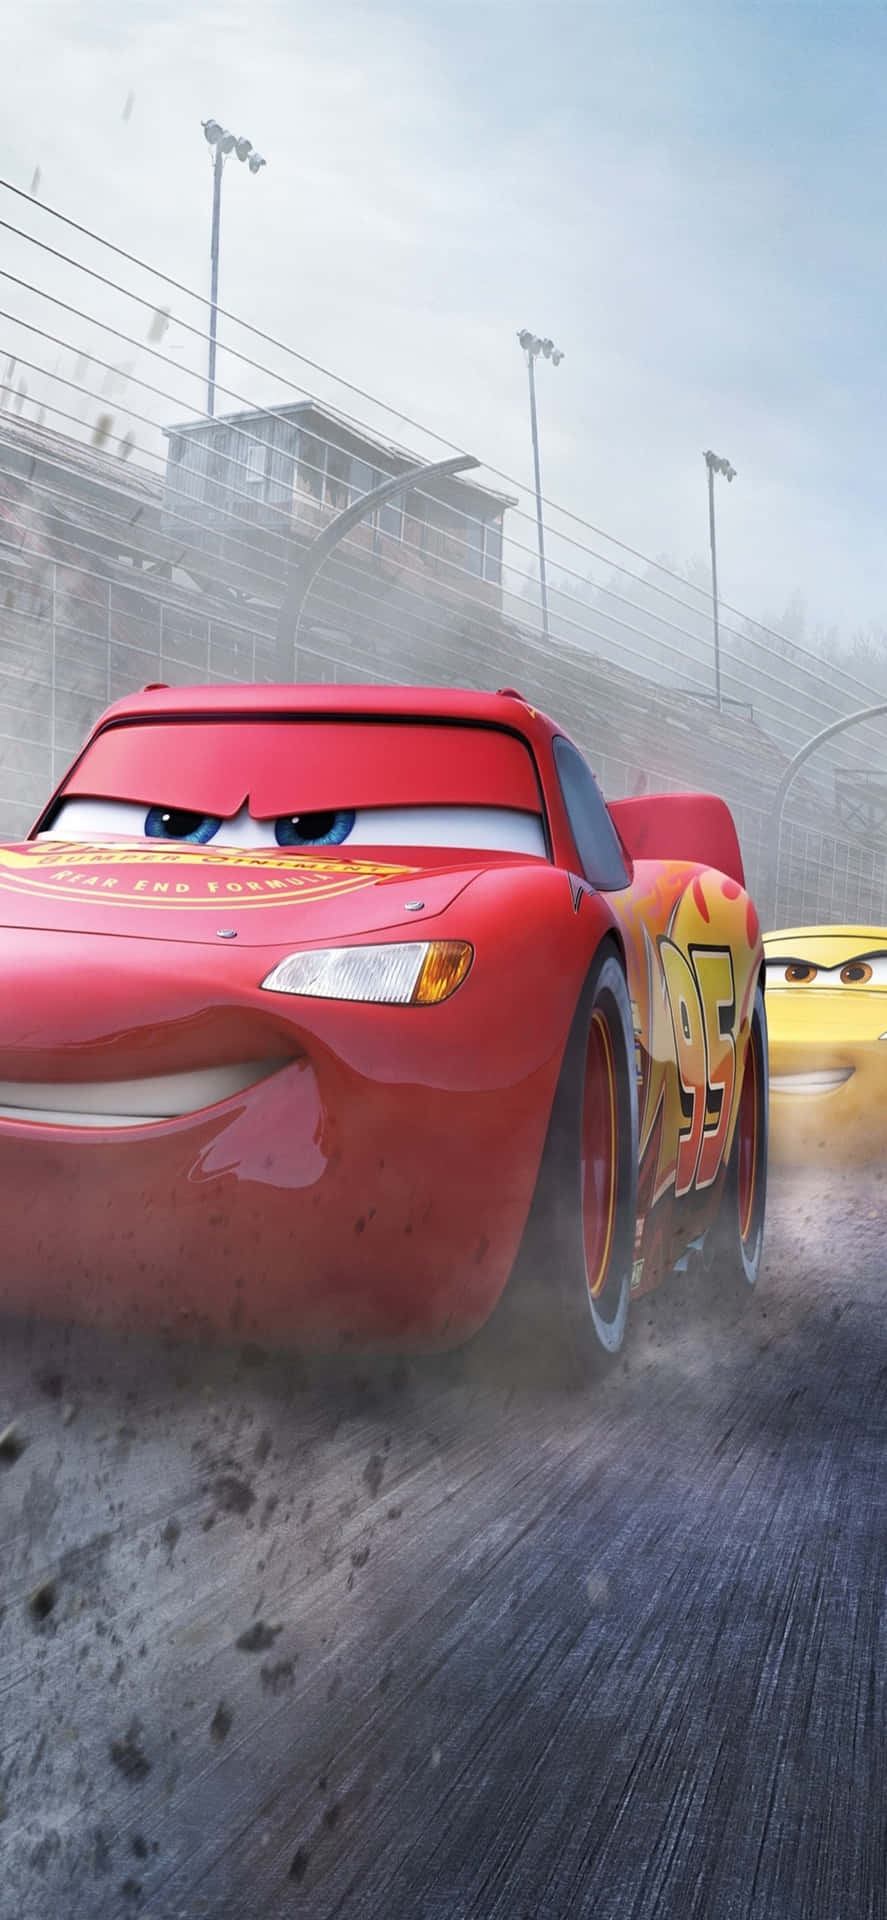 Download Happy Racing McQueen iPhone X Cars Background